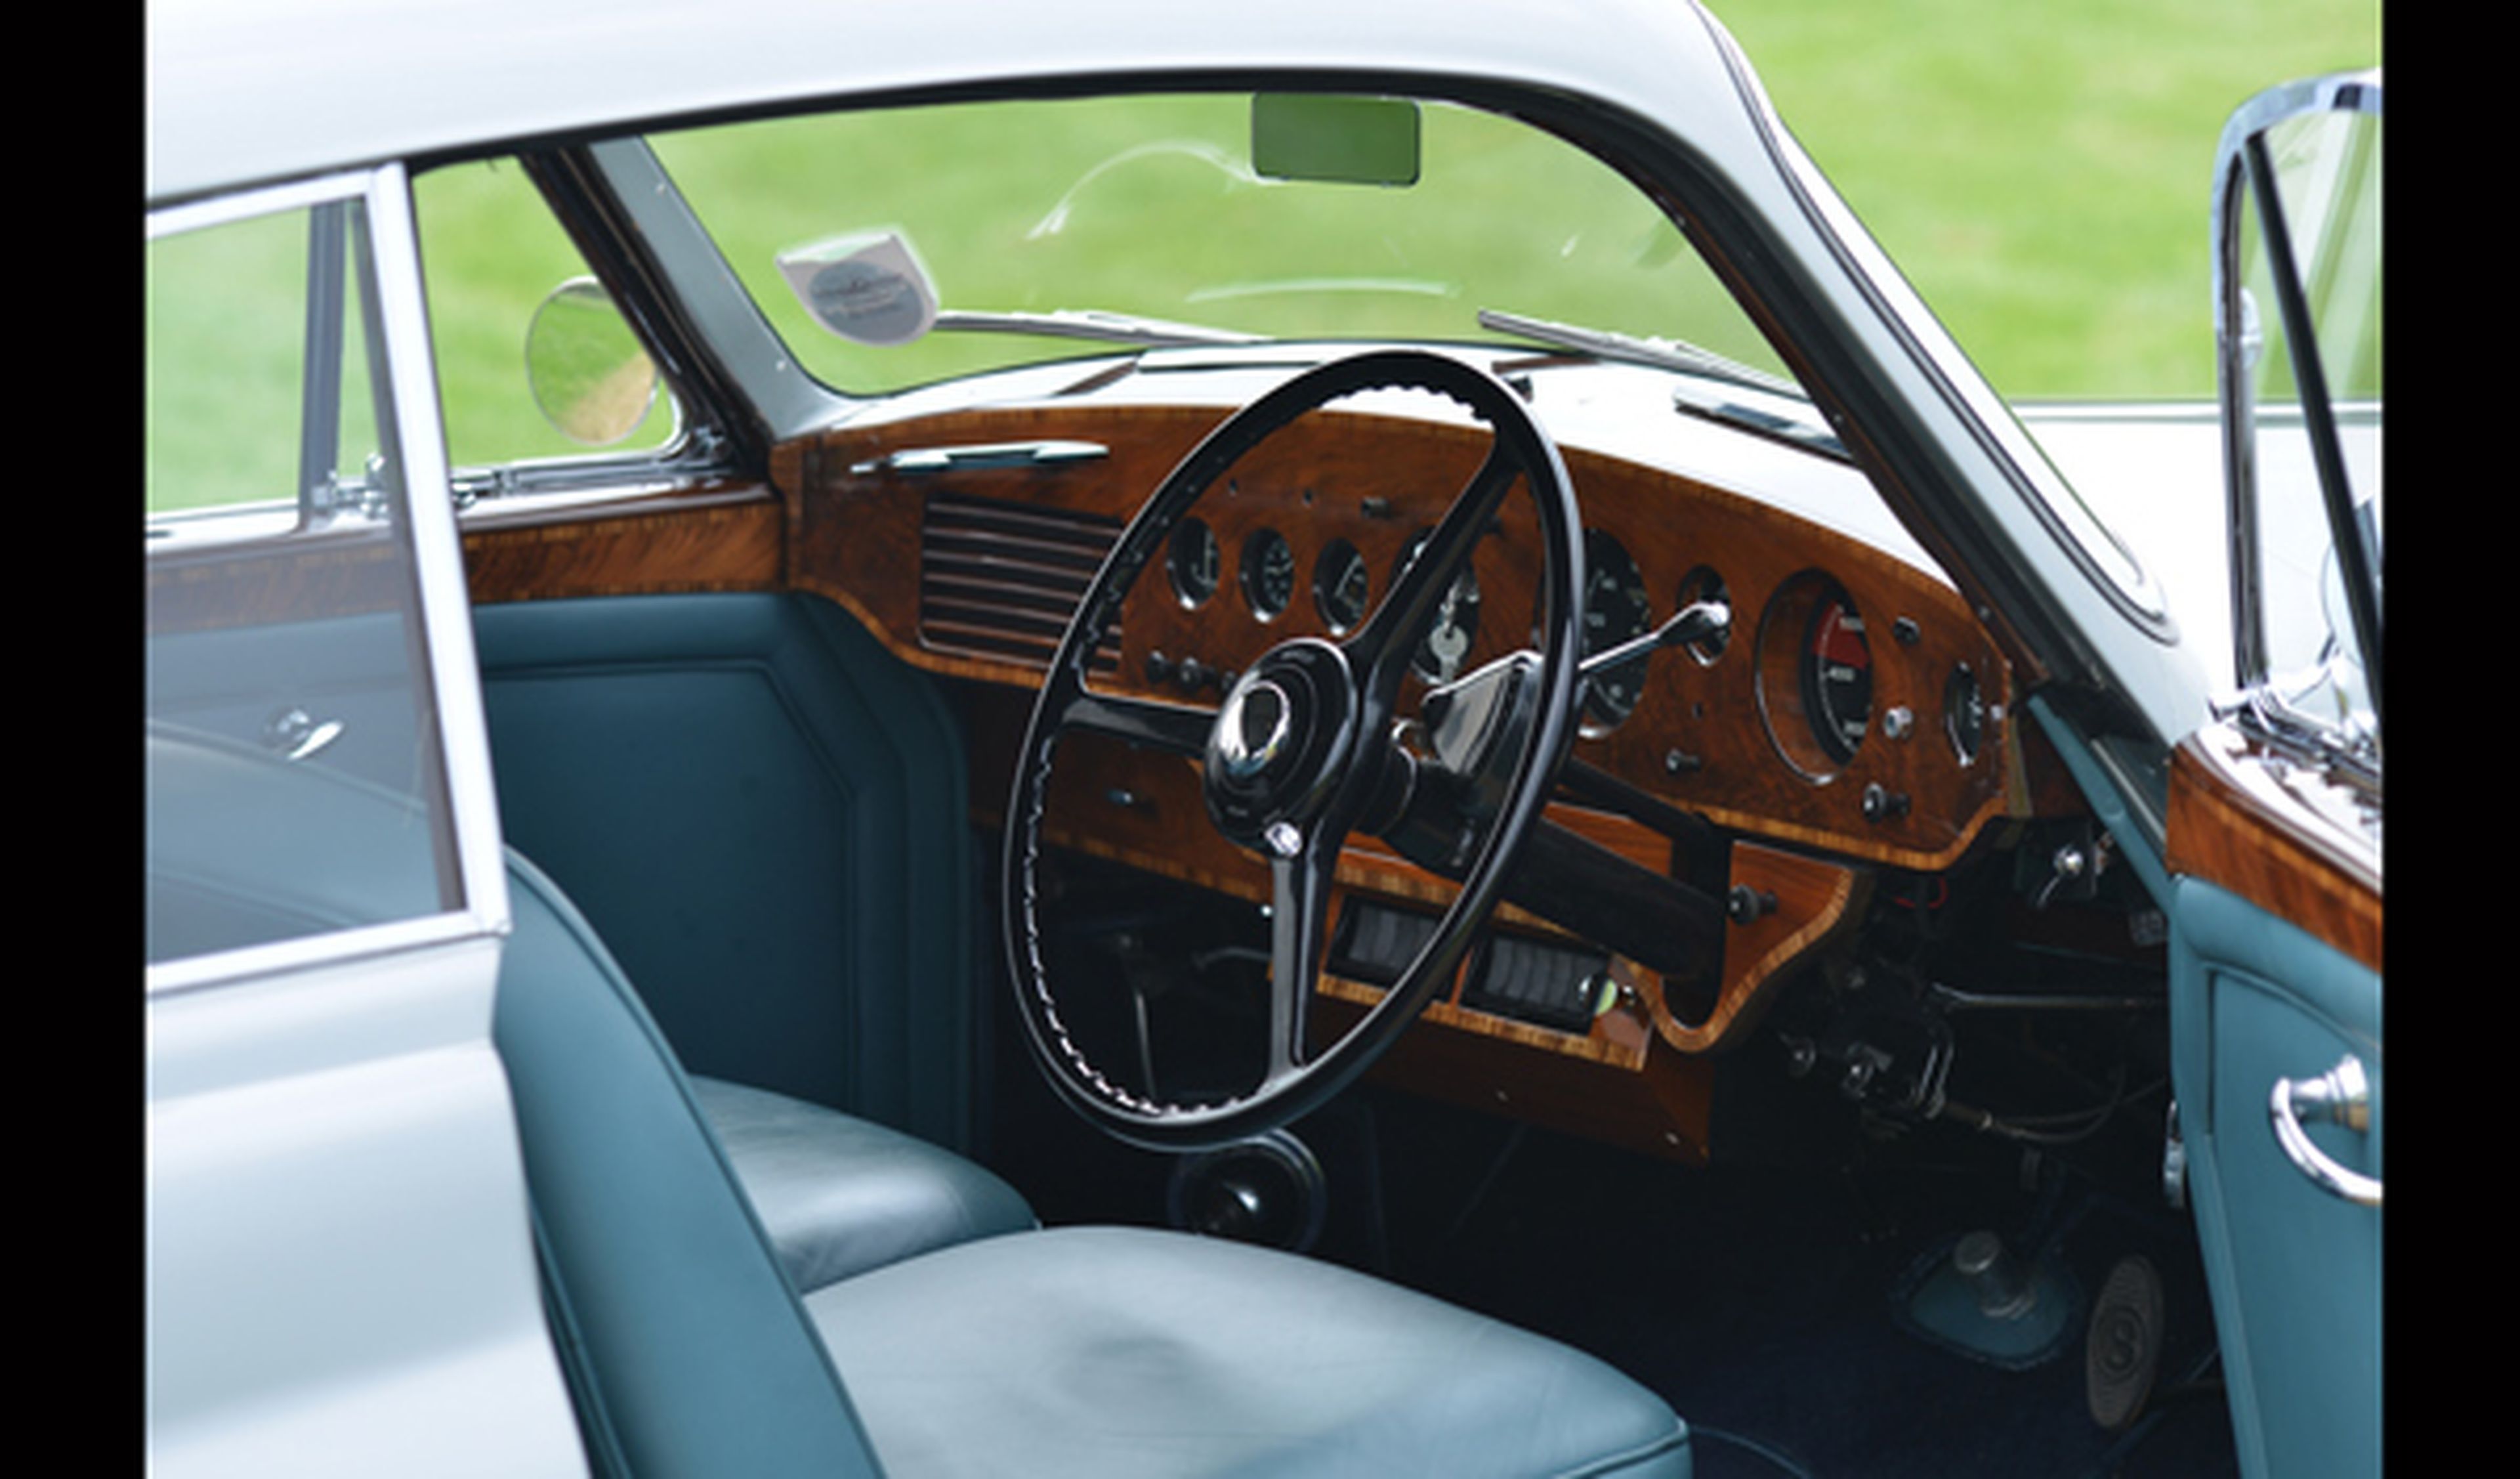 Sale a subasta un raro Bentley R Type Continental Fastback